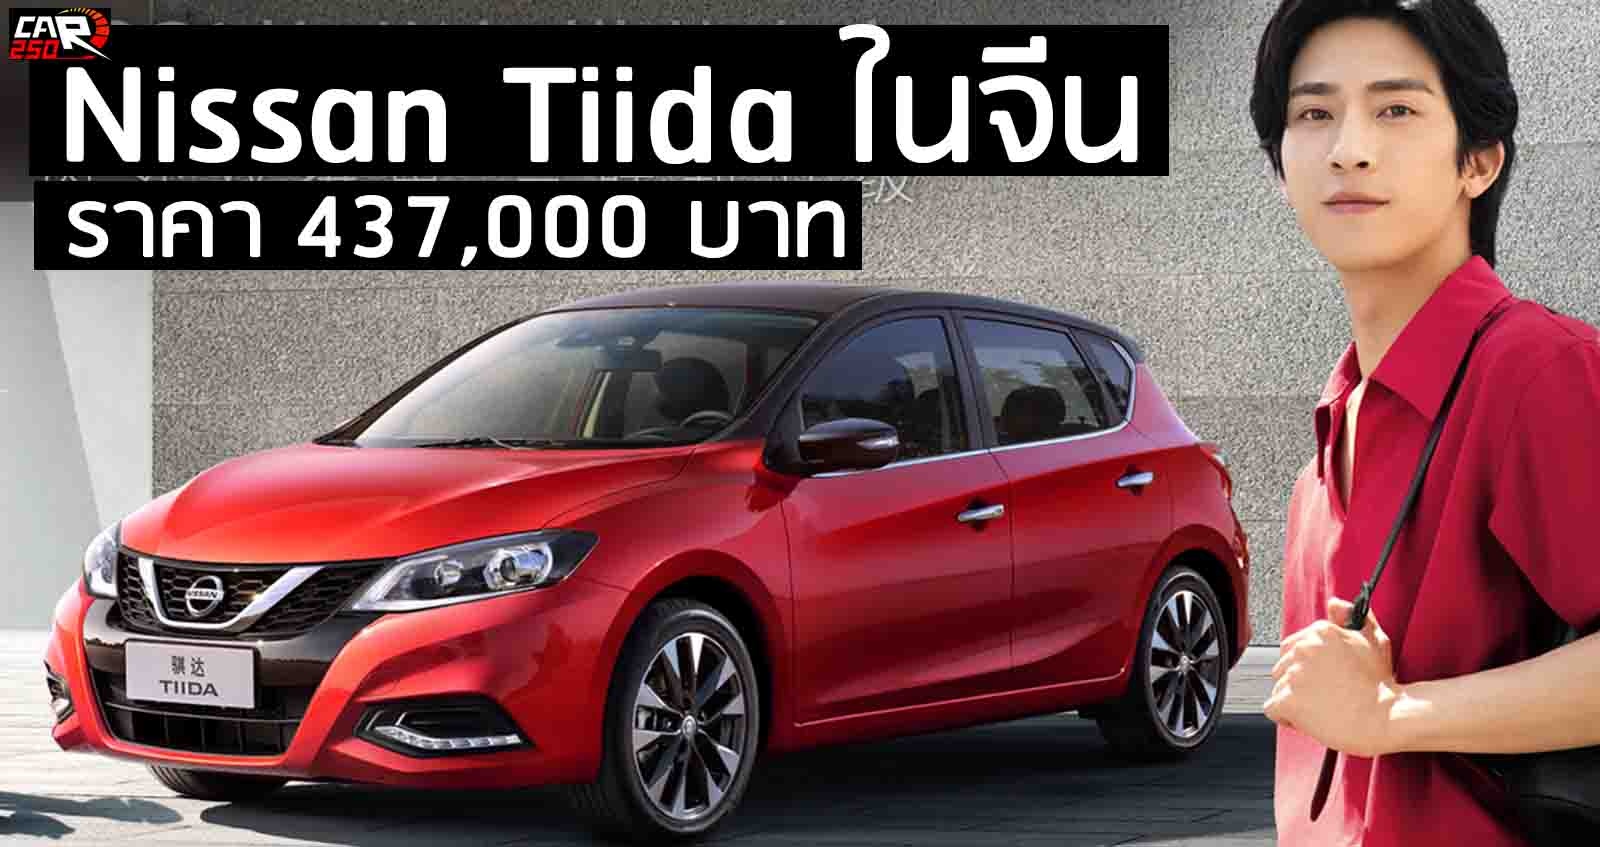 Nissan Tiida ปรับปรุงใหม่ ราคา 437,000 บาท ในจีน